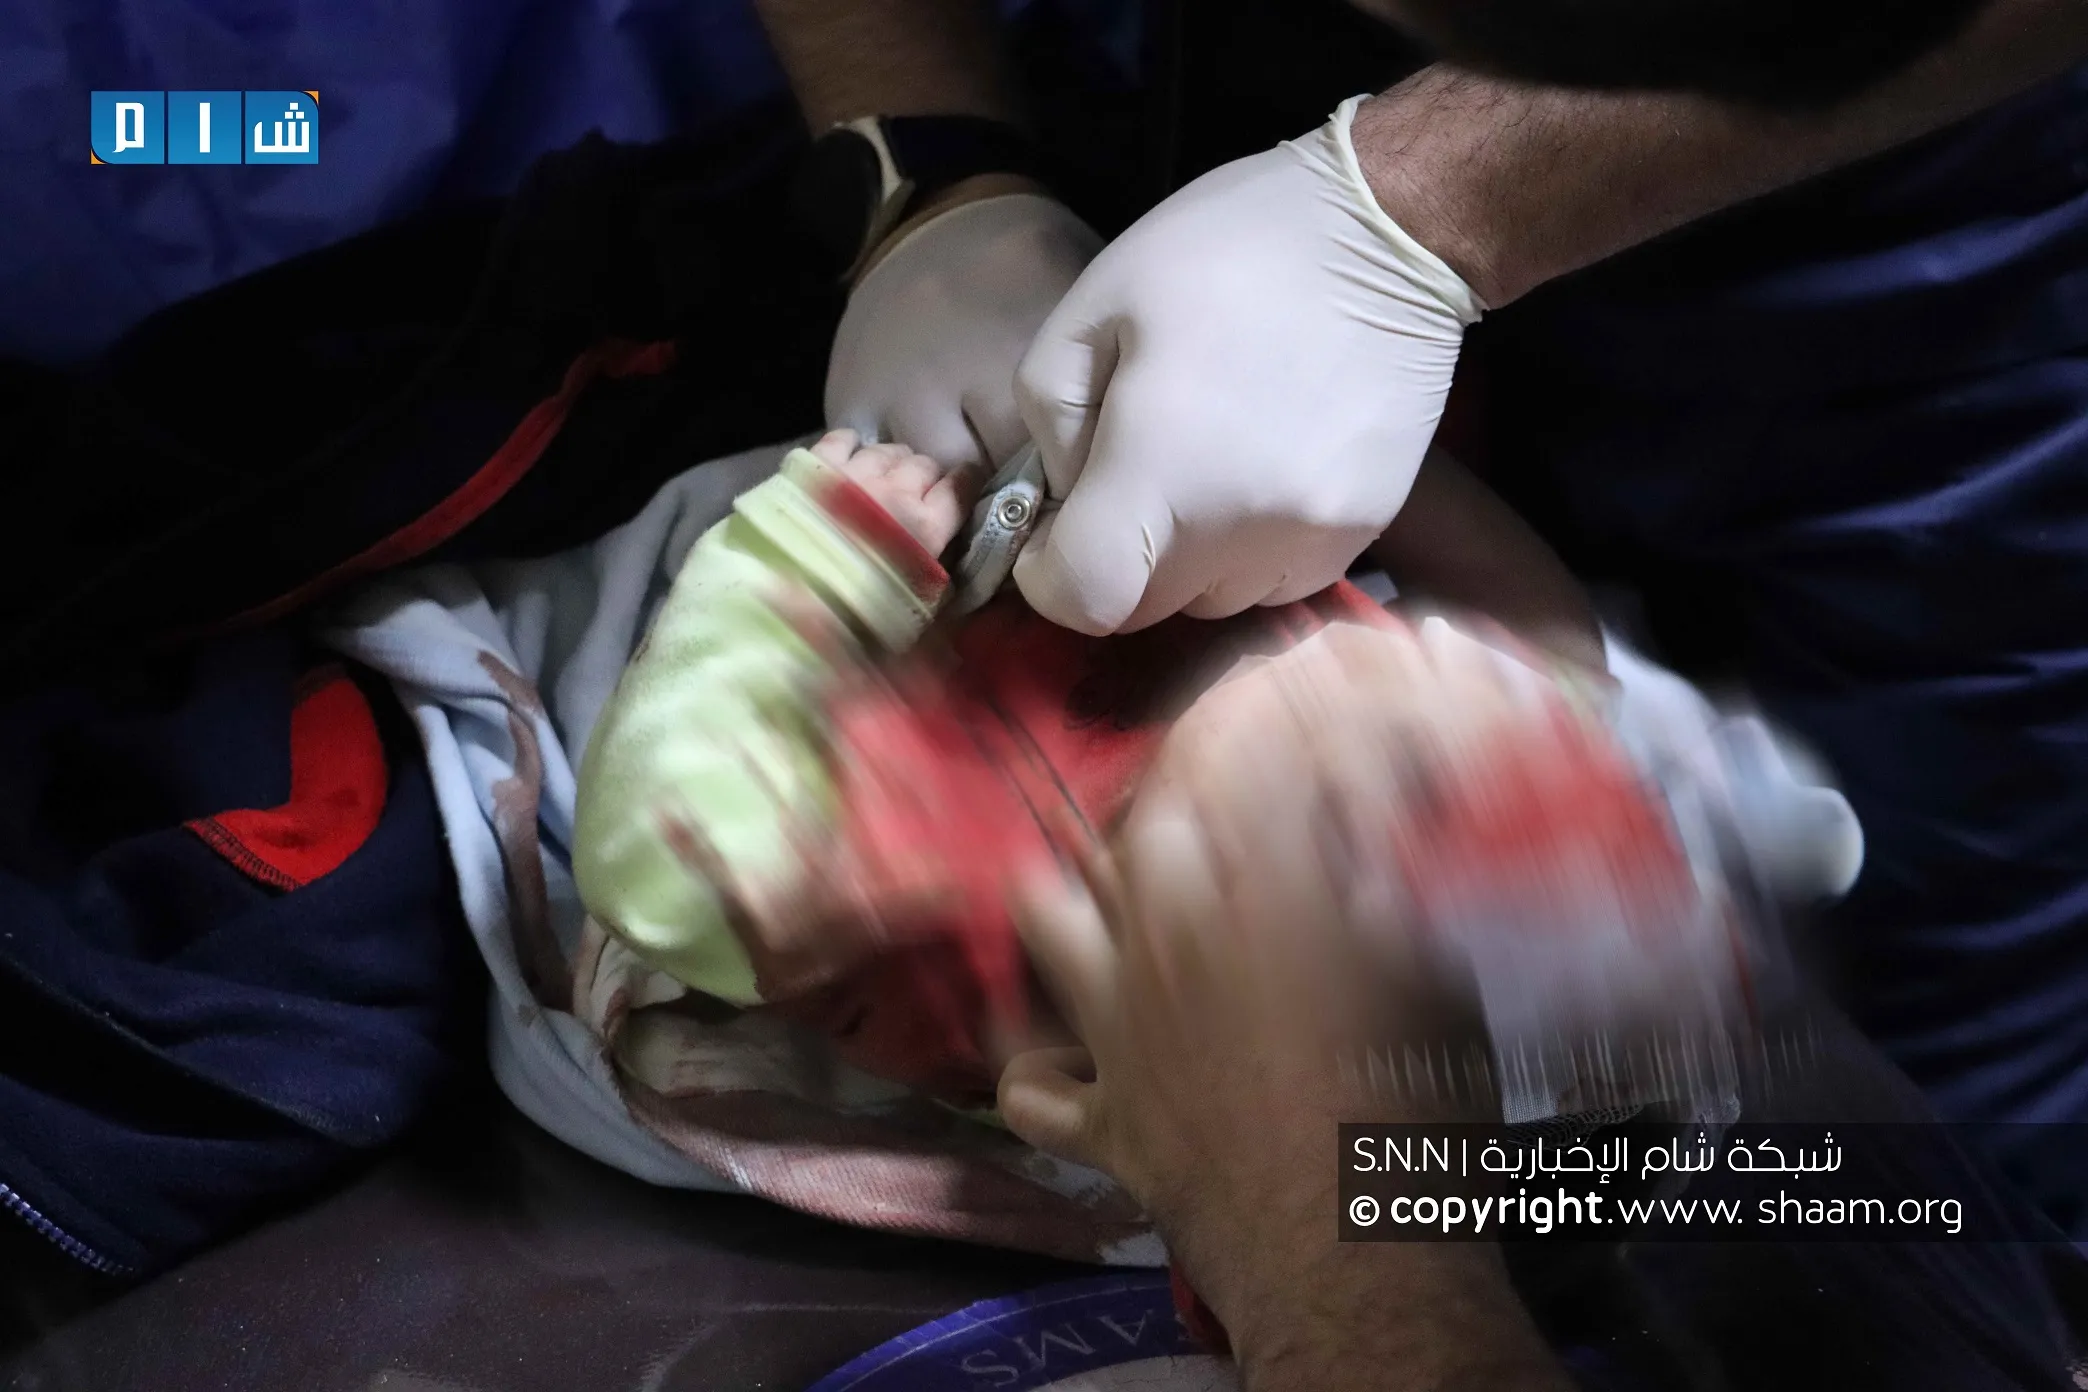 مجزرة مروعة بقصف جوي وصاروخي طال مخيمات للنازحين غربي إدلب